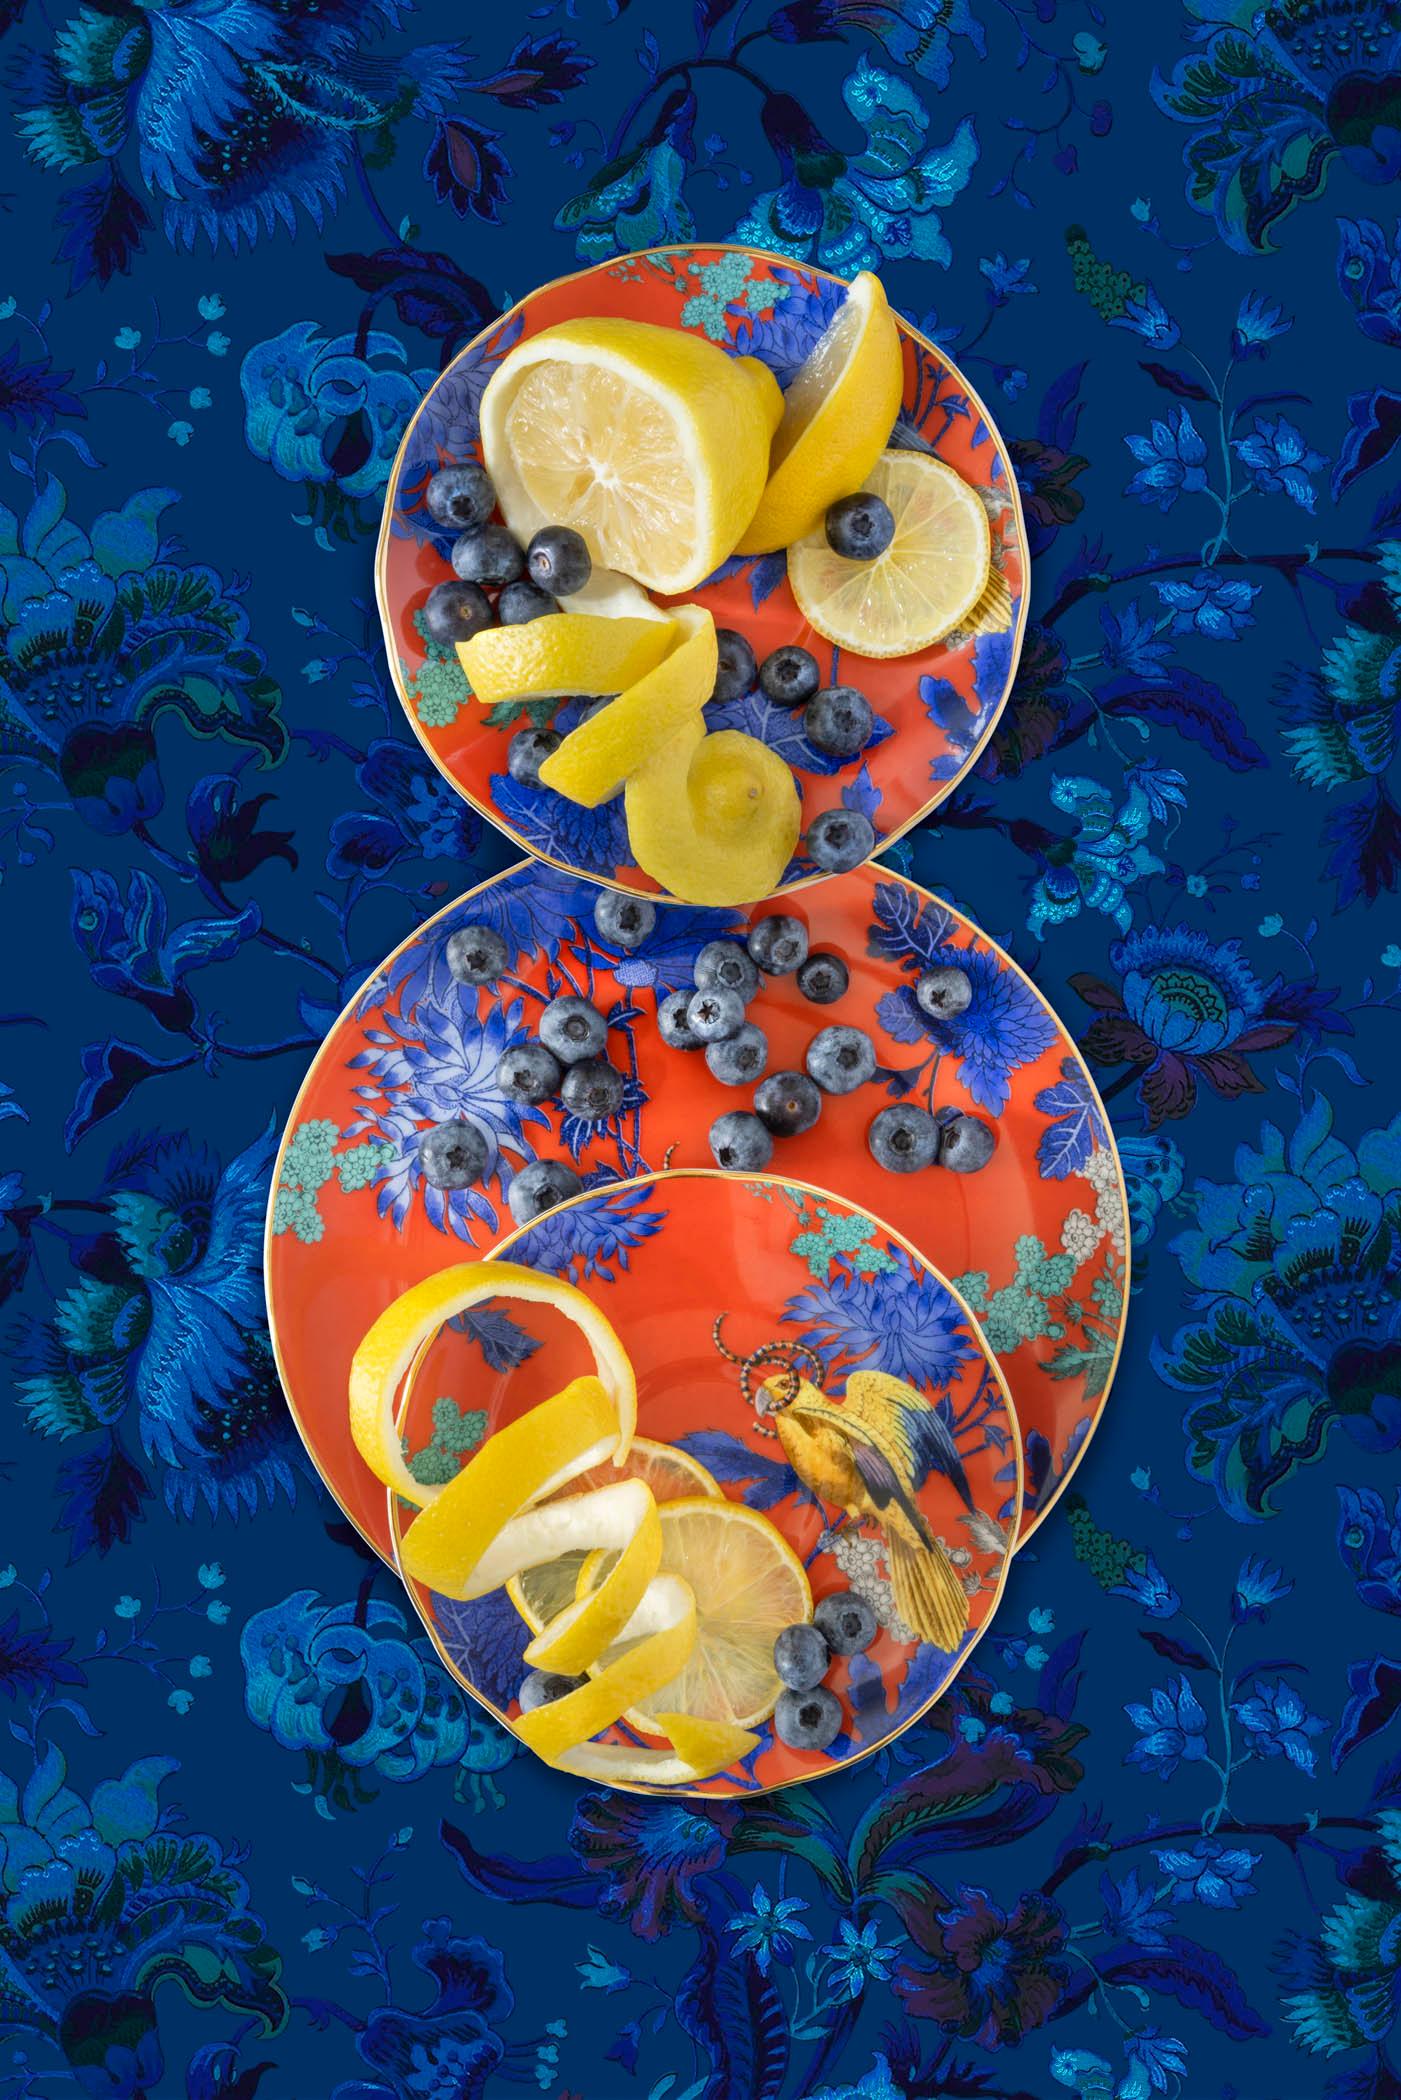 Color Photograph JP Terlizzi - Photographie Wedgwood Golden Parrot with Blueberry Lemons, édition limitée 